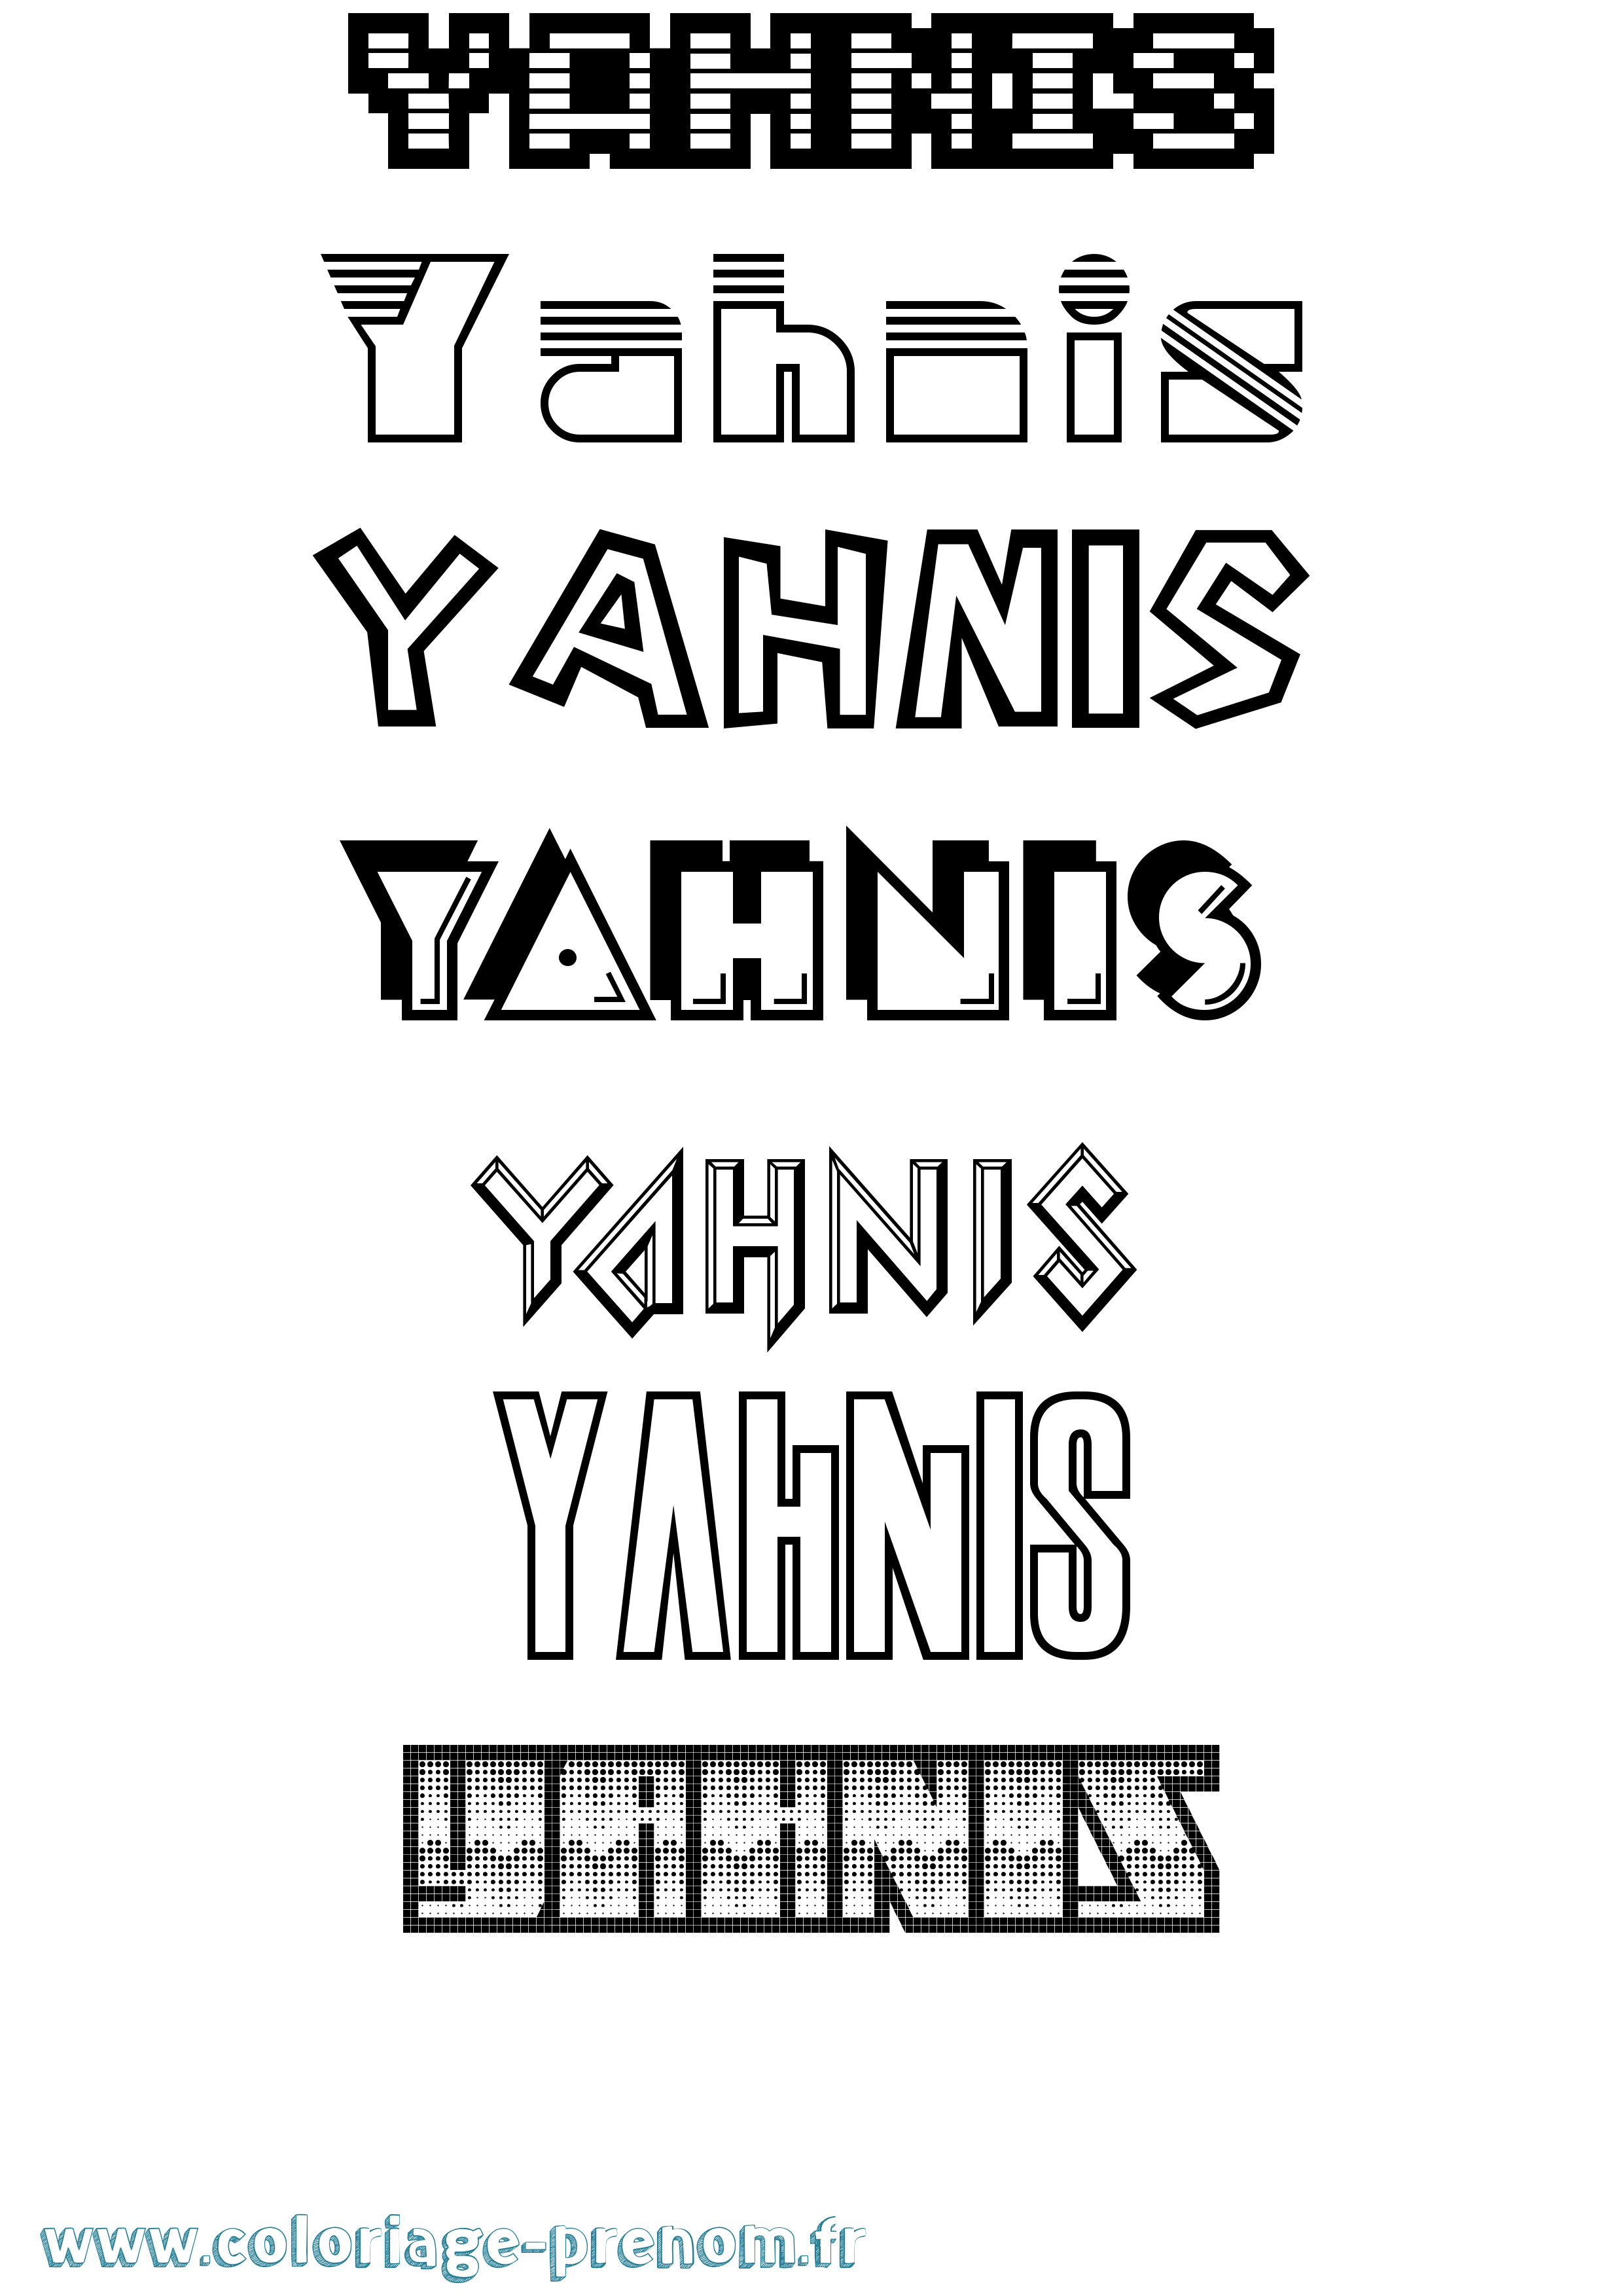 Coloriage prénom Yahnis Jeux Vidéos